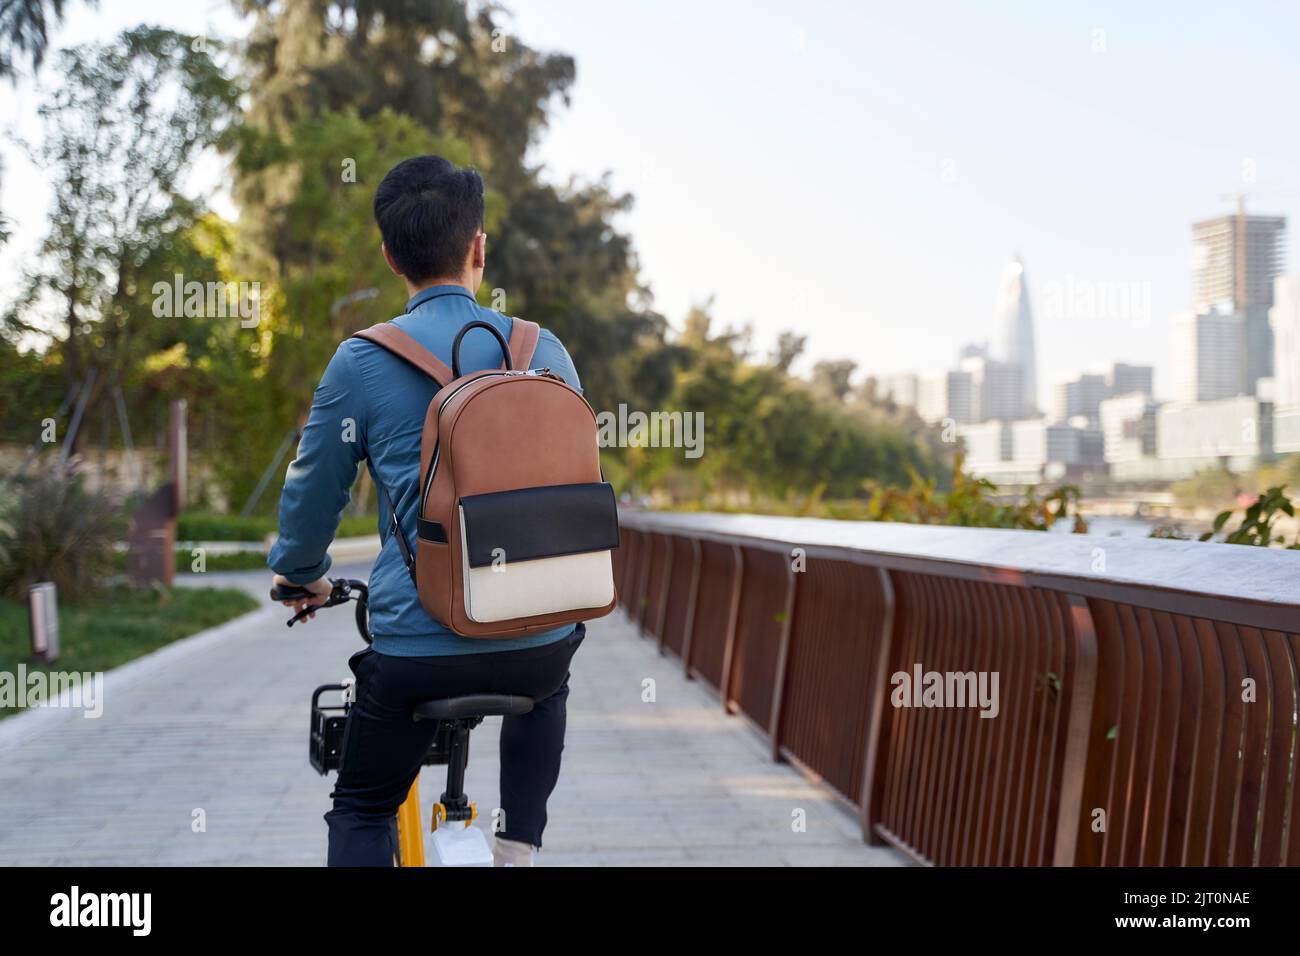 Rückansicht eines asiatischen jungen erwachsenen Mannes, der im Stadtpark Fahrrad reitet Stockfoto